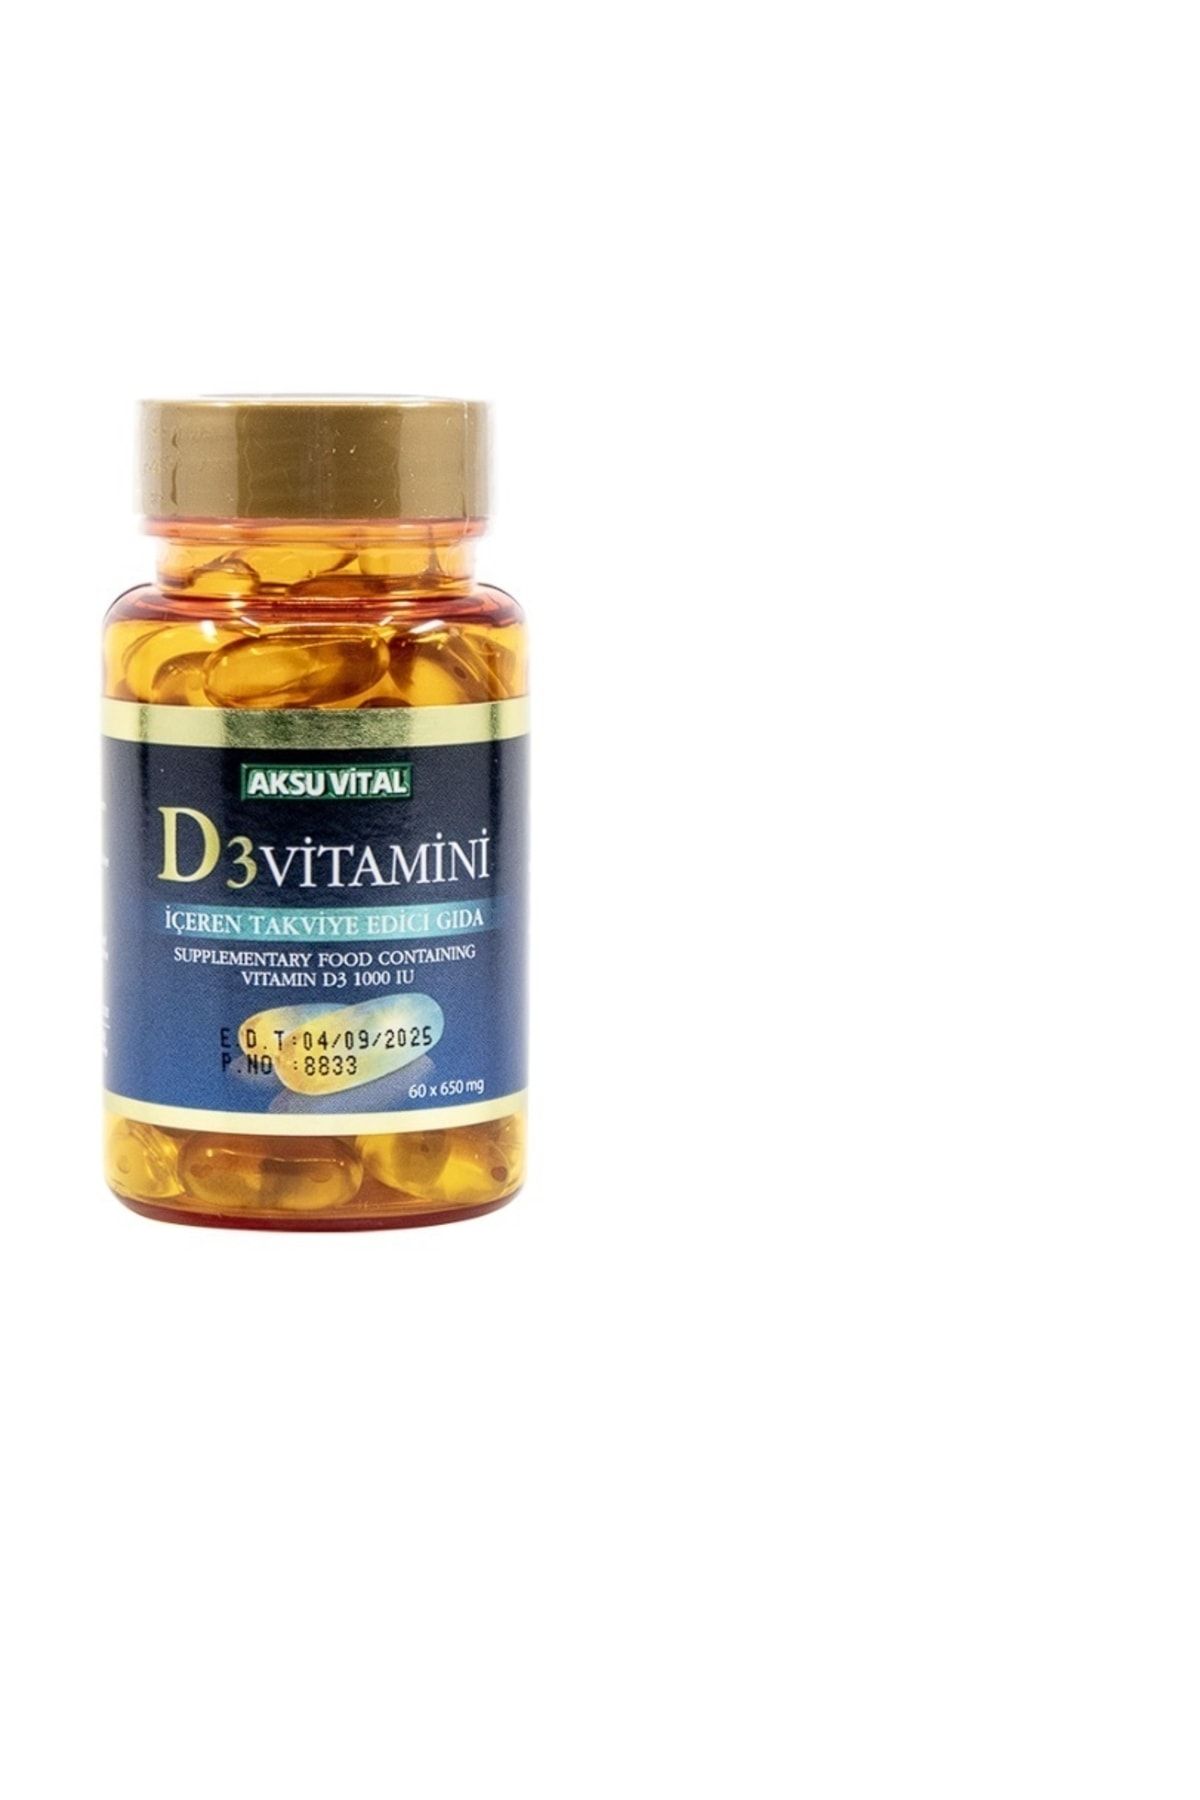 Aksu Vital Vitamin D3 60 Softjel